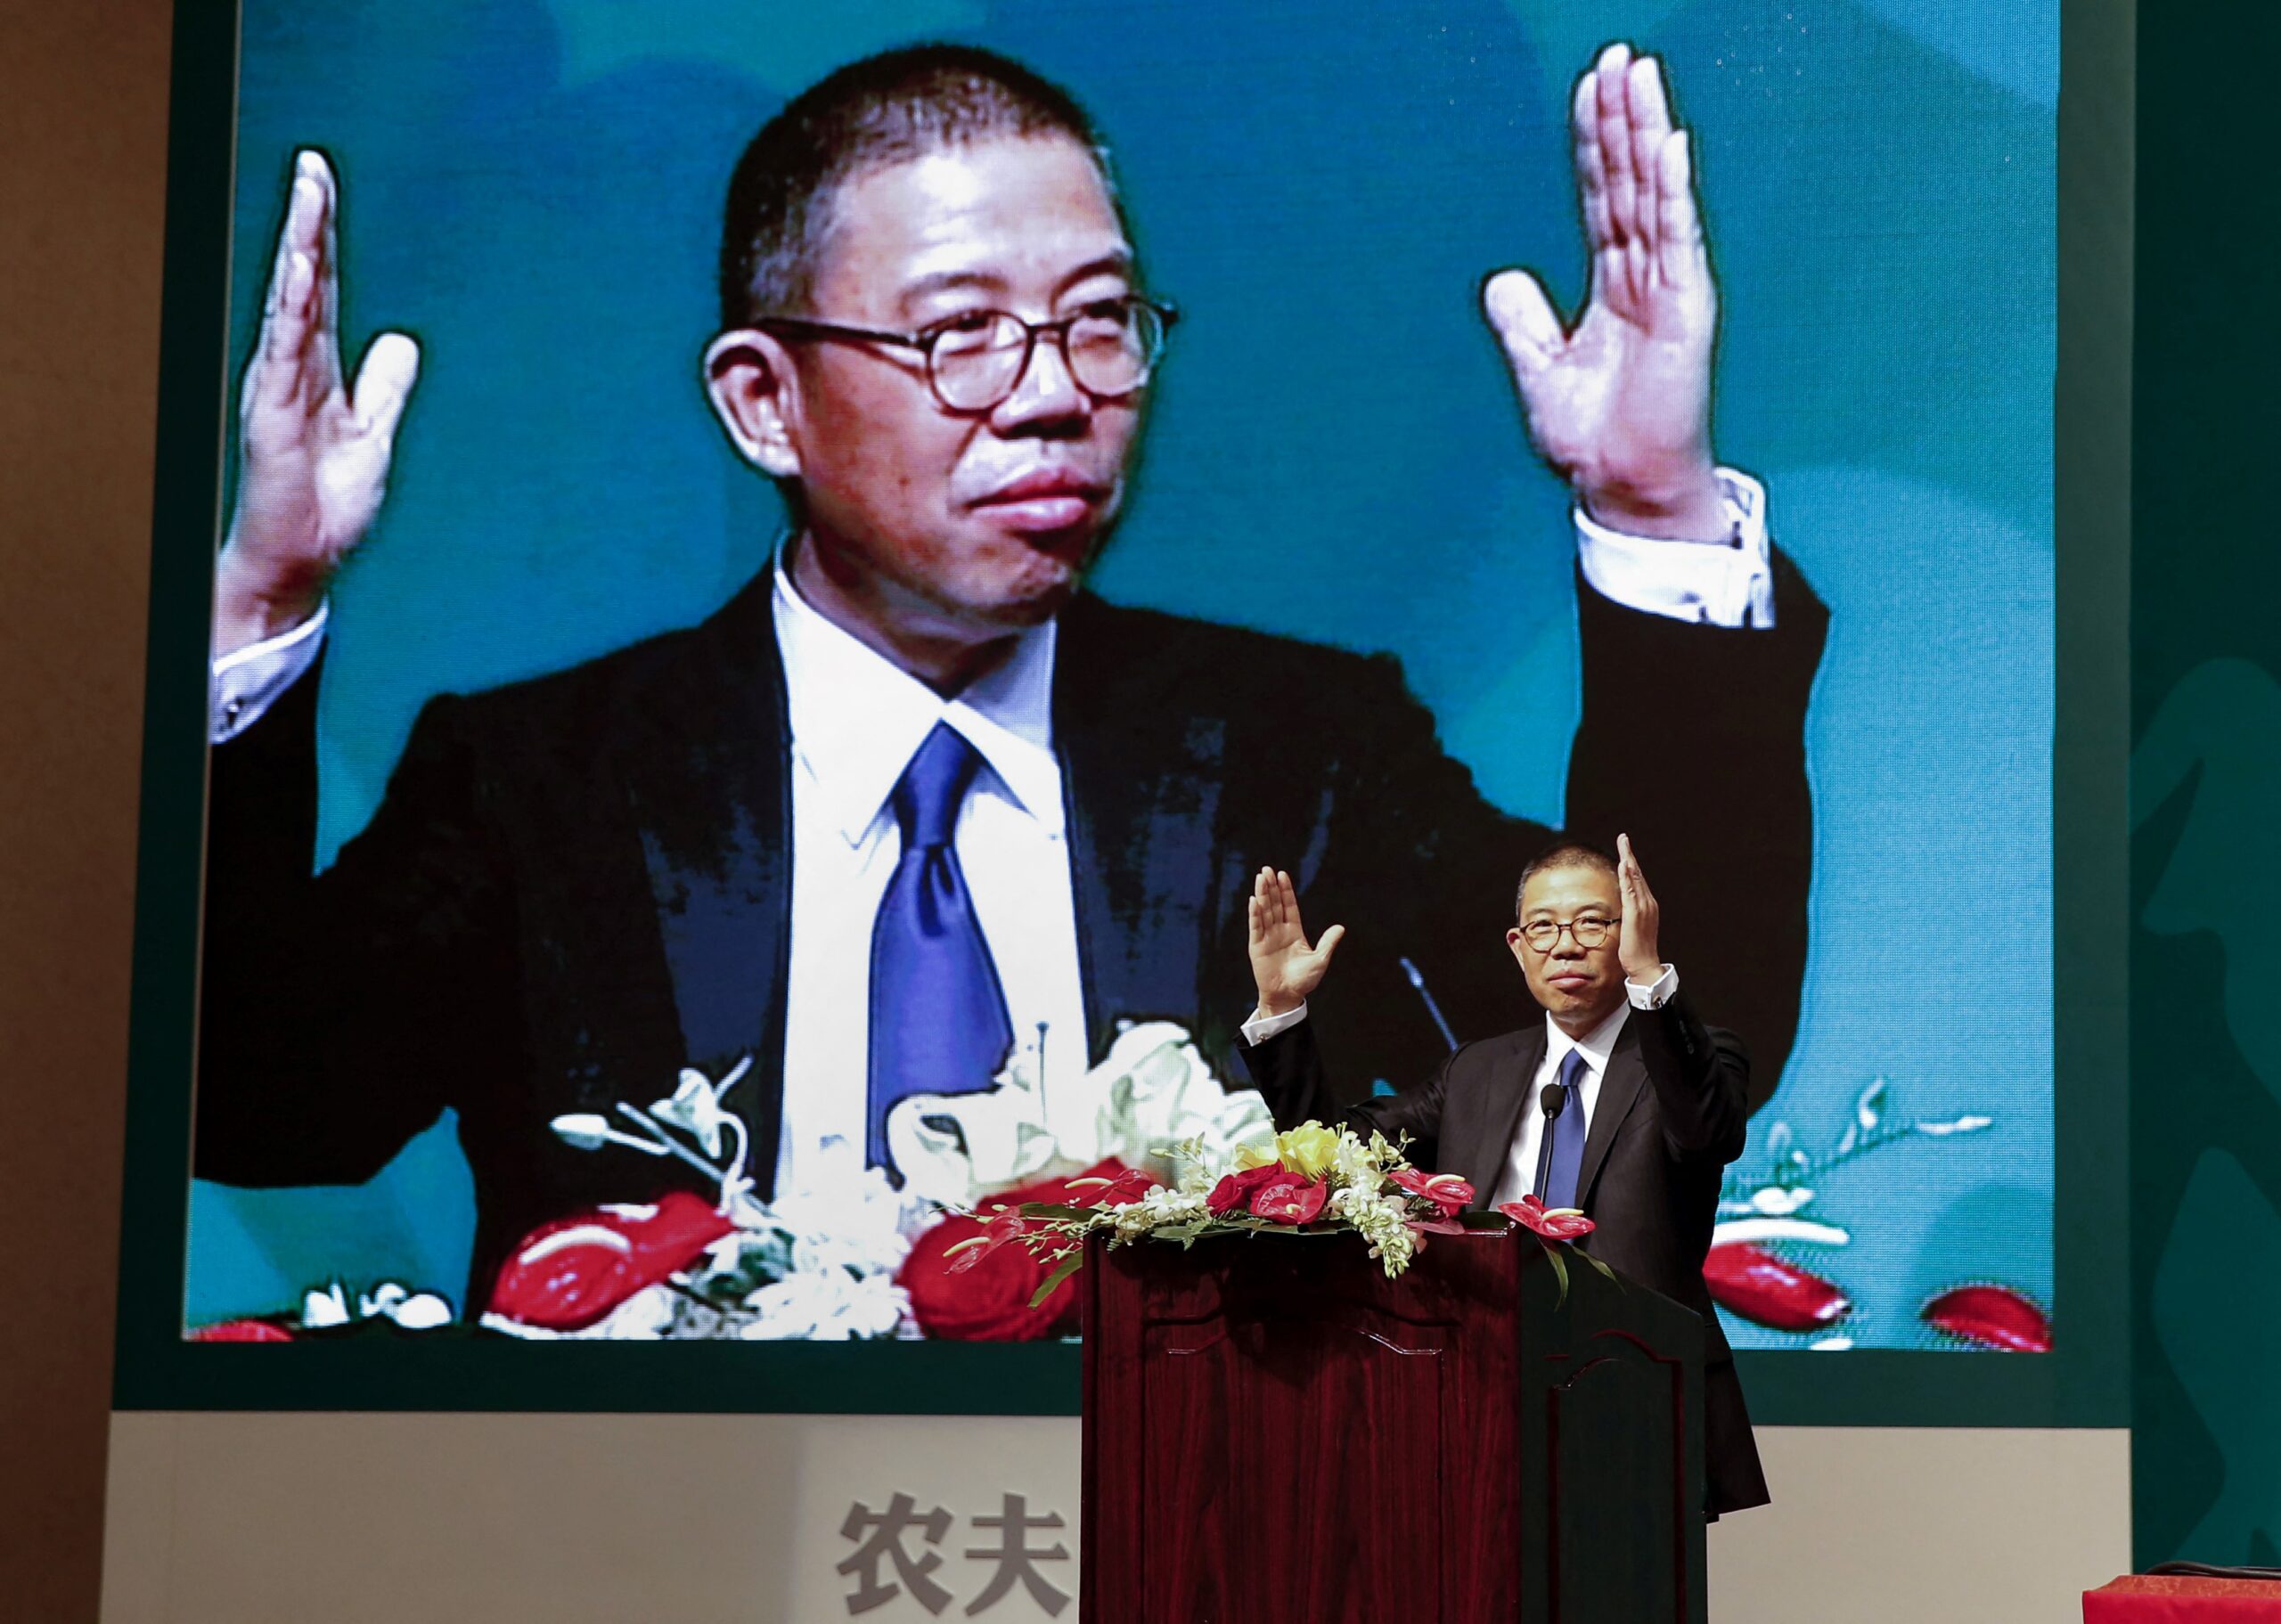 El rey chino del agua mineral se convierte en el más rico de Asia